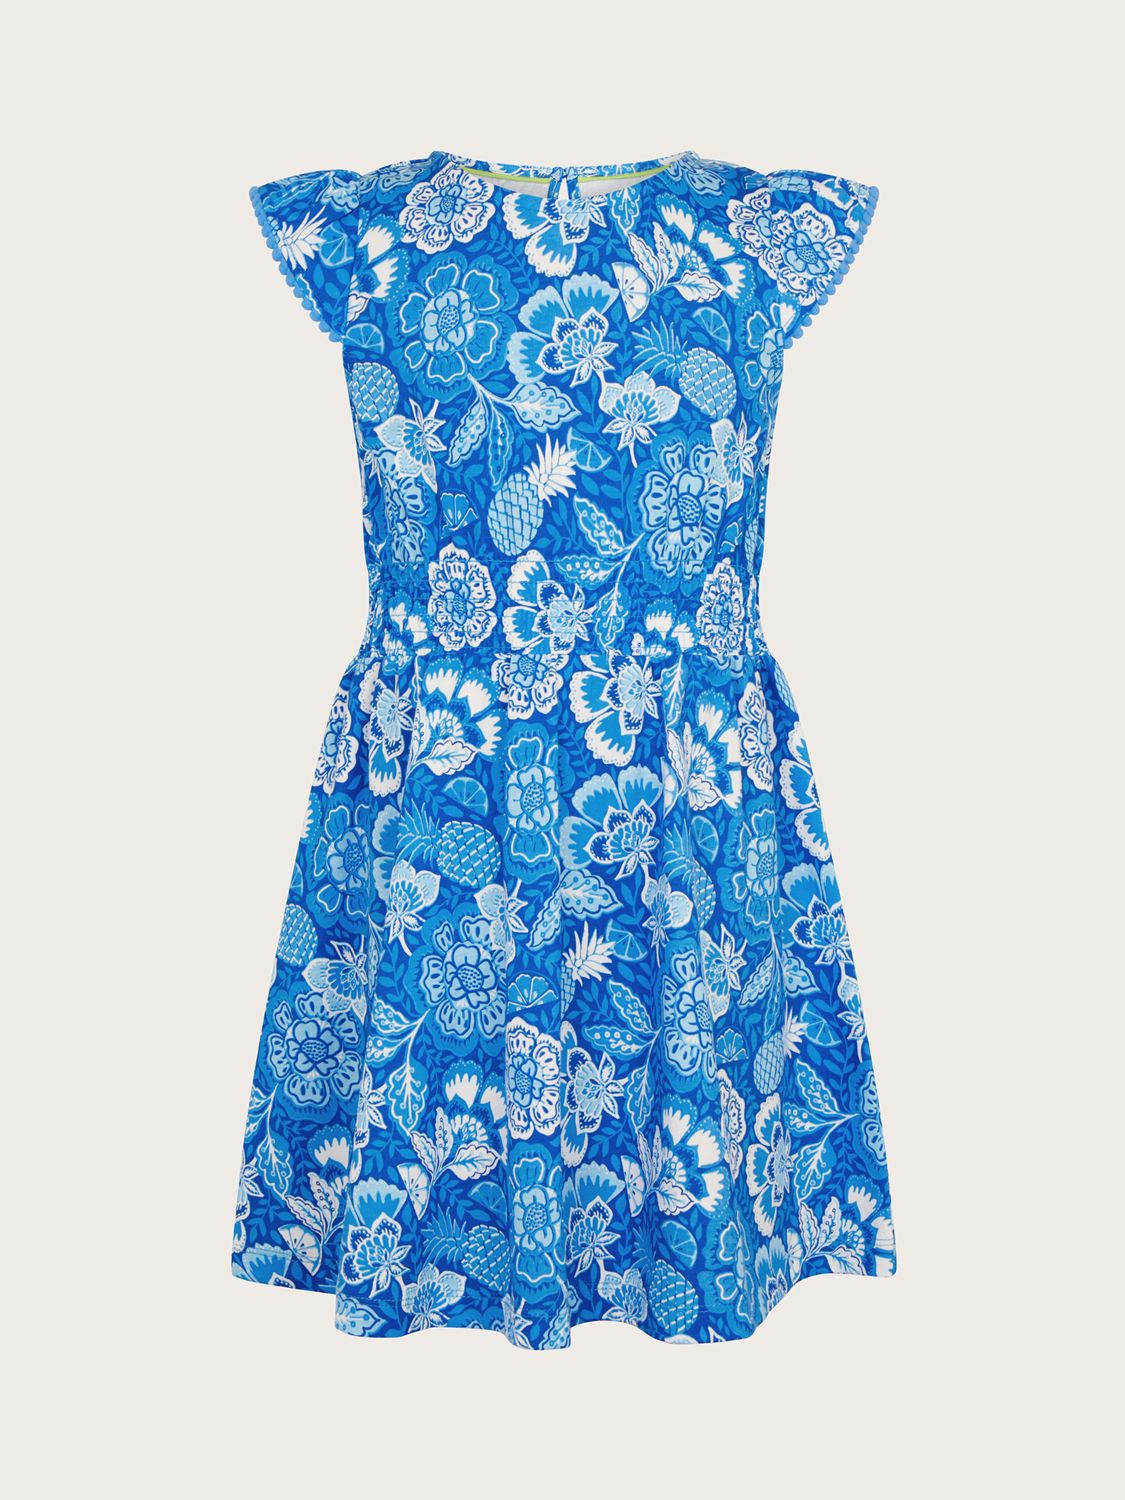 Buy Monsoon Kids' Heritage Floral Fruit Print Dress, Blue Online at johnlewis.com